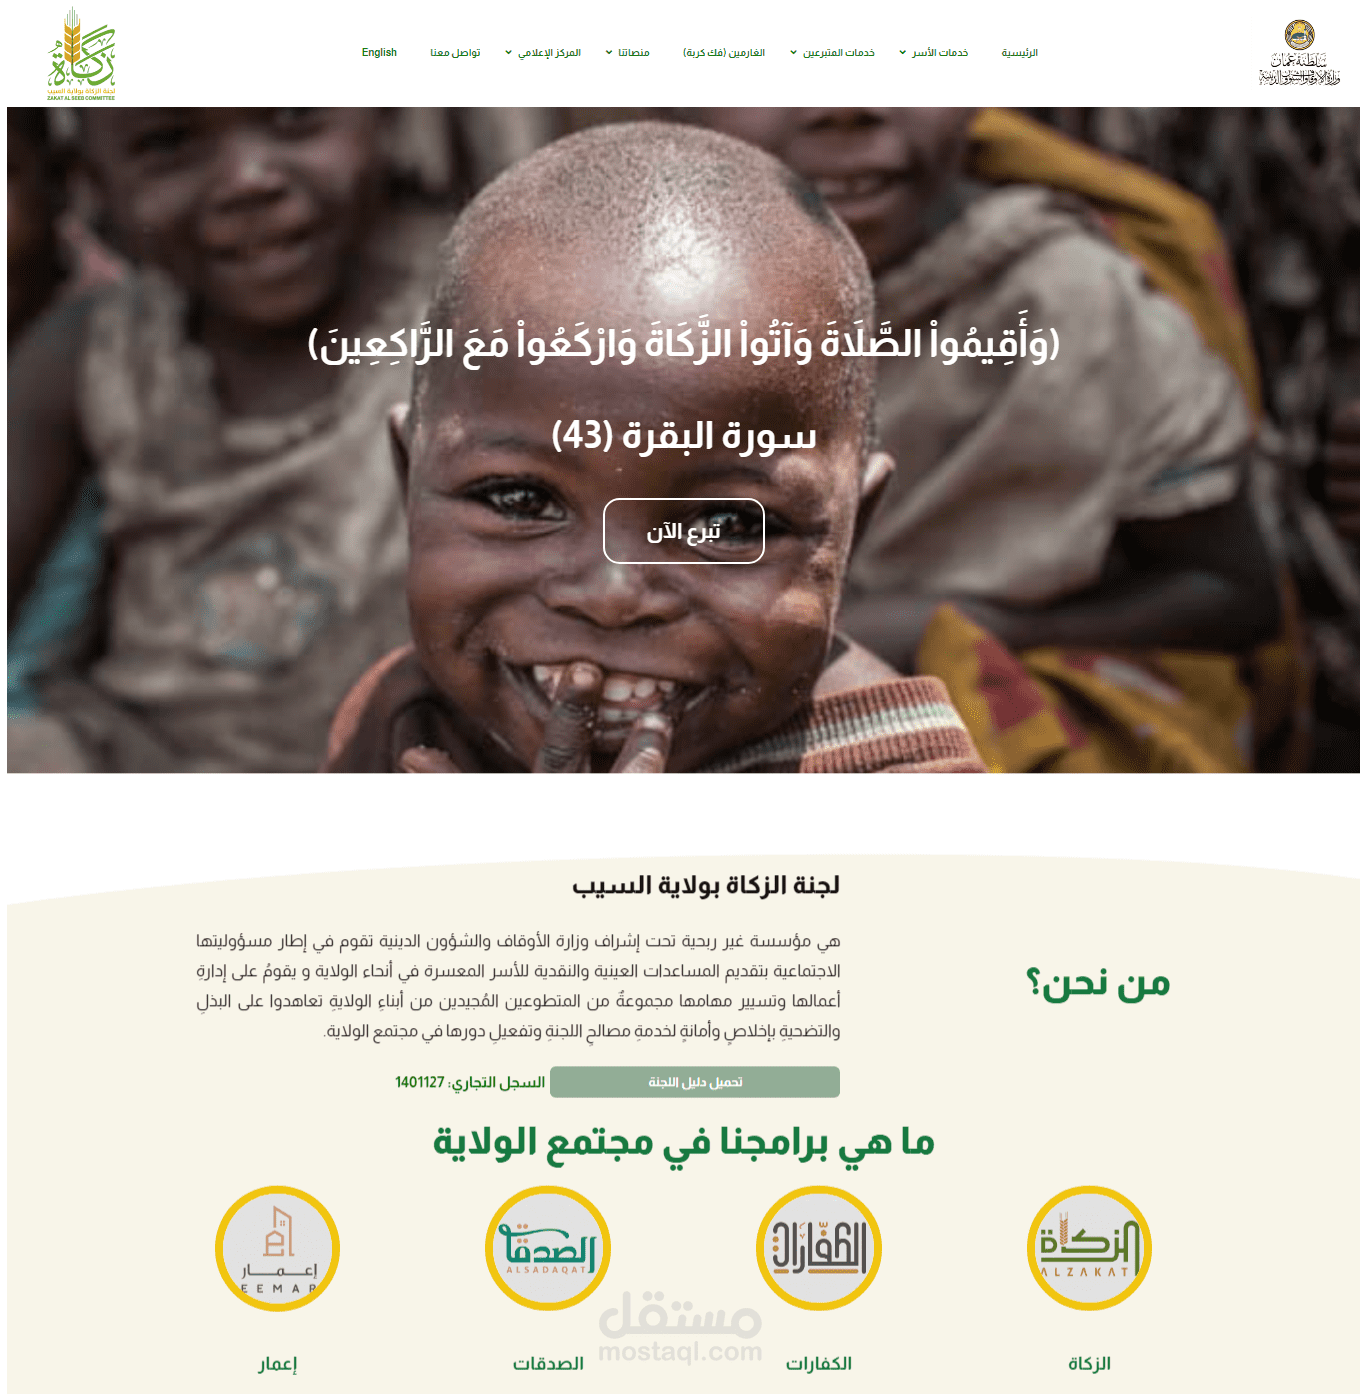 إنشاء موقع لجنة الزكاة بولاية السيب - عمان لجمع التبرعات